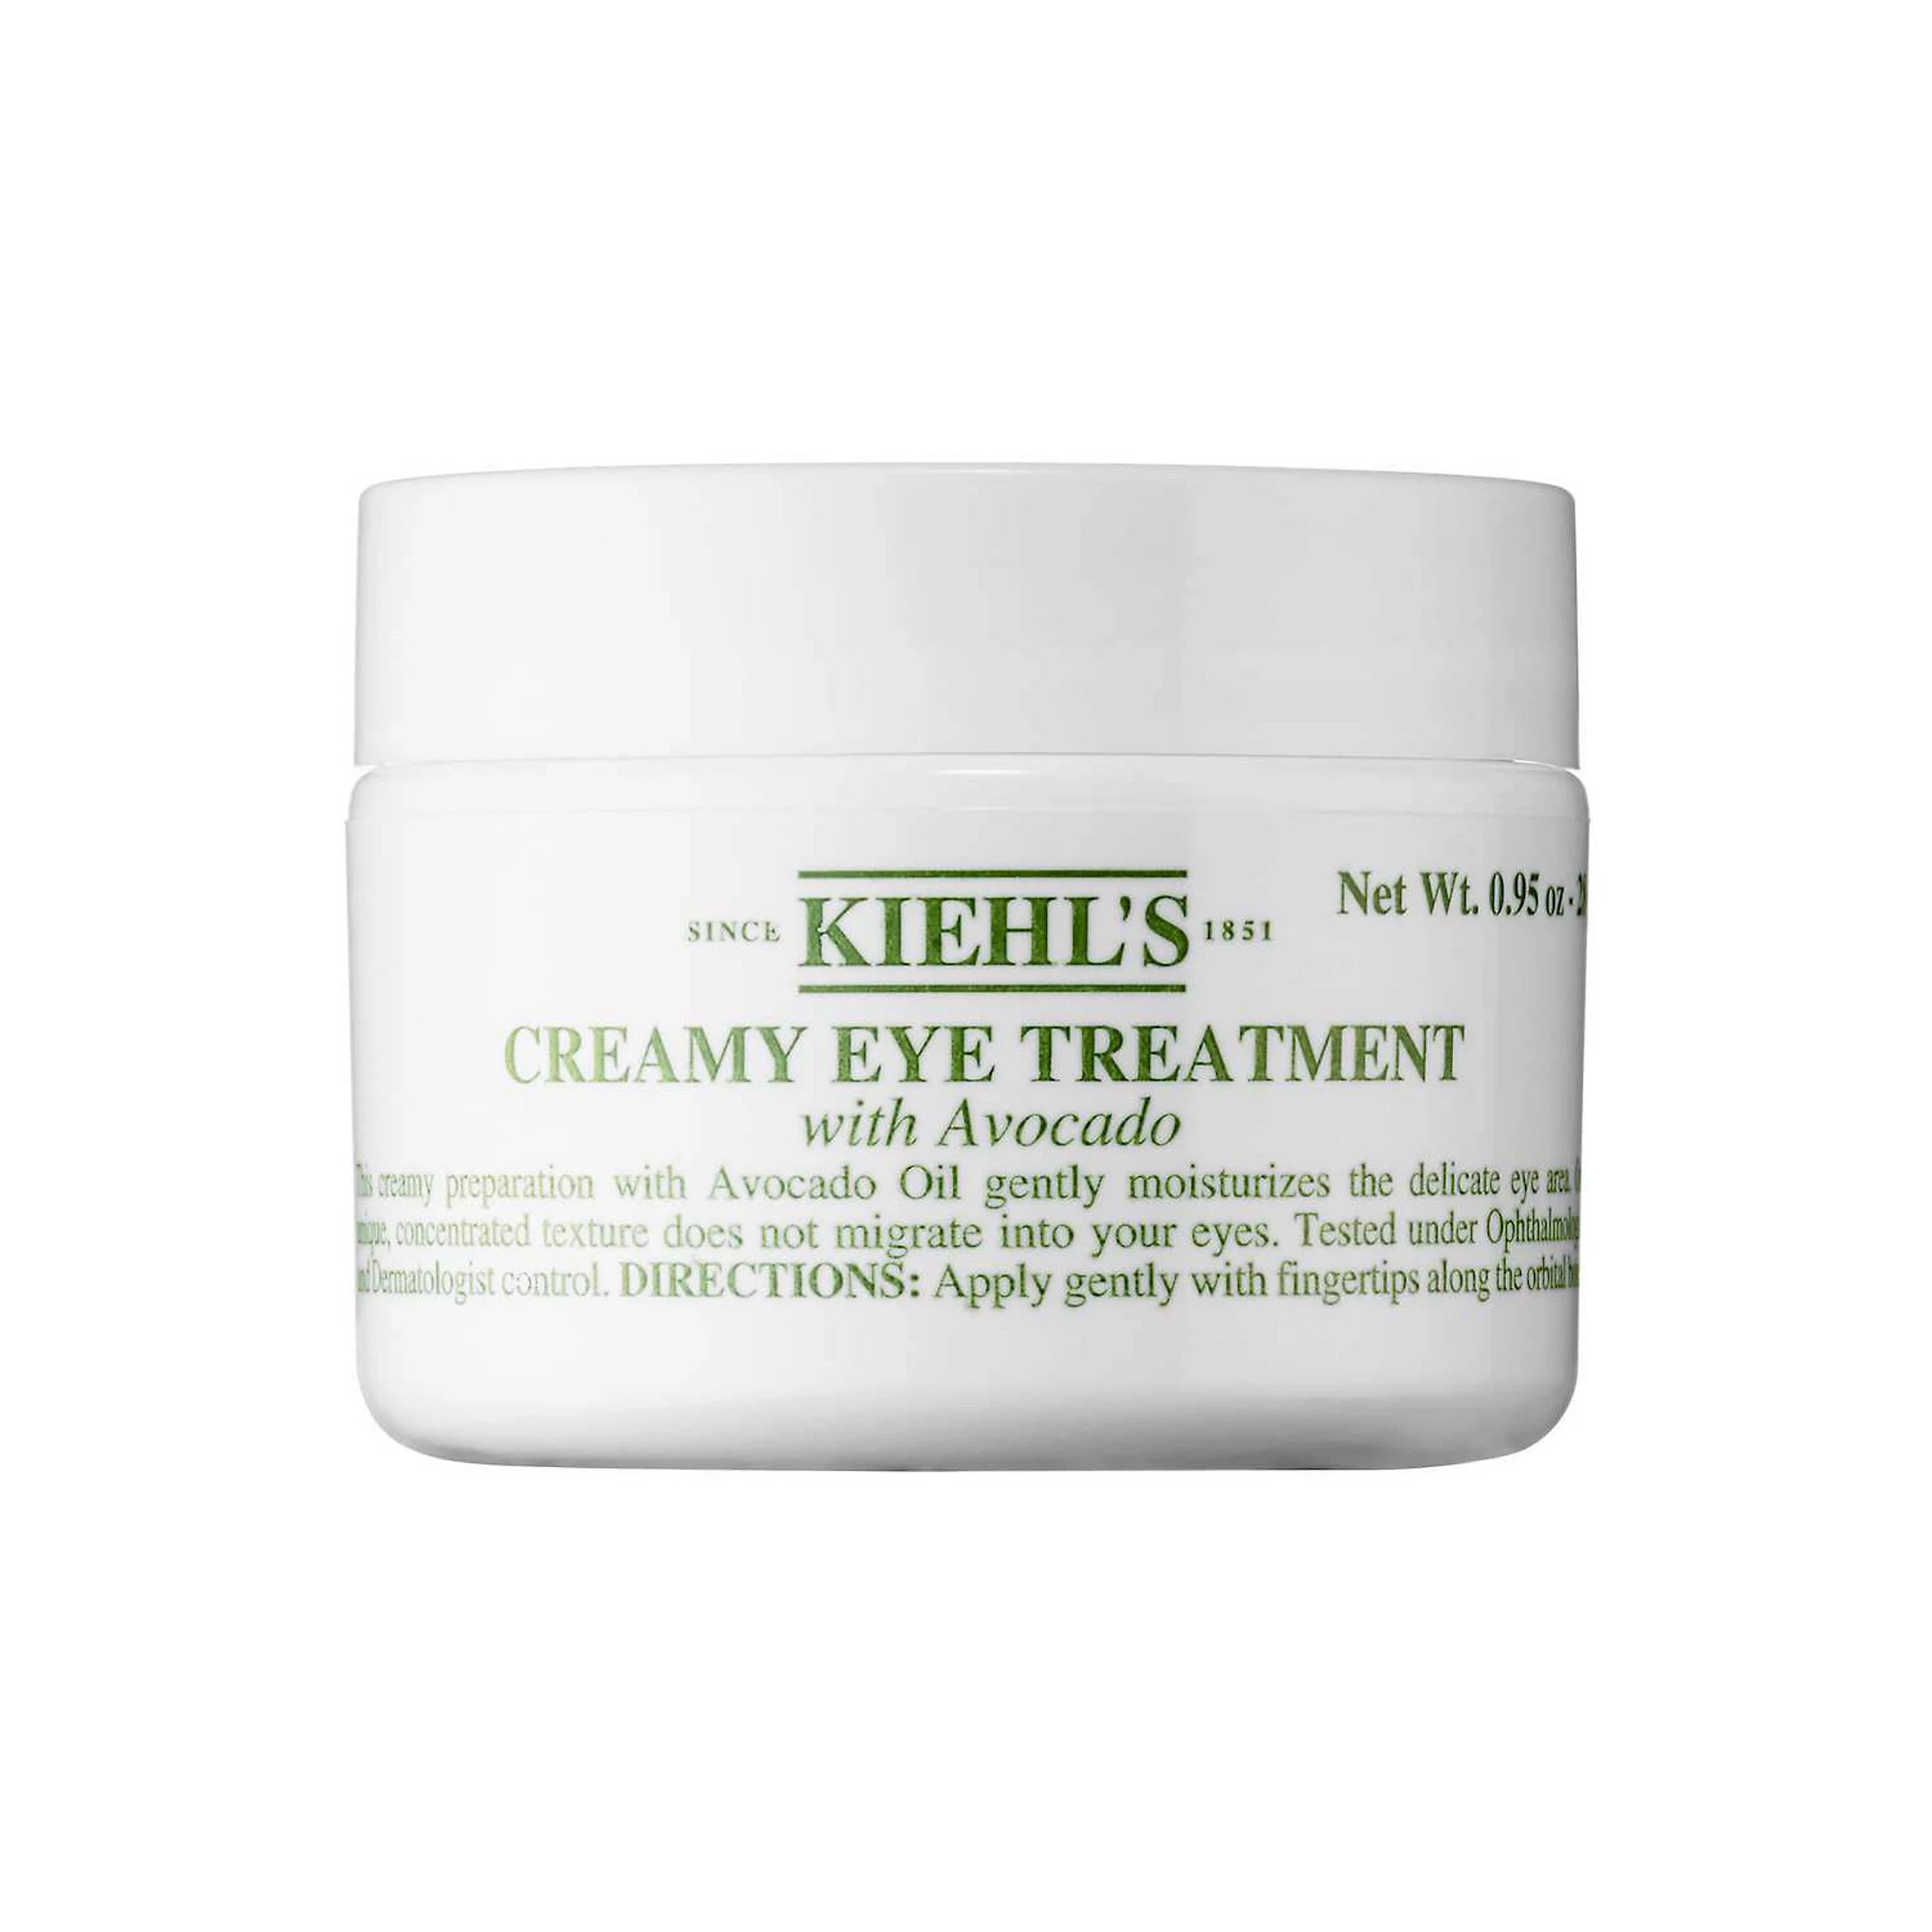 Kiehl's Since 1851 Creamy Eye Treatment with Avocado | Kohl's